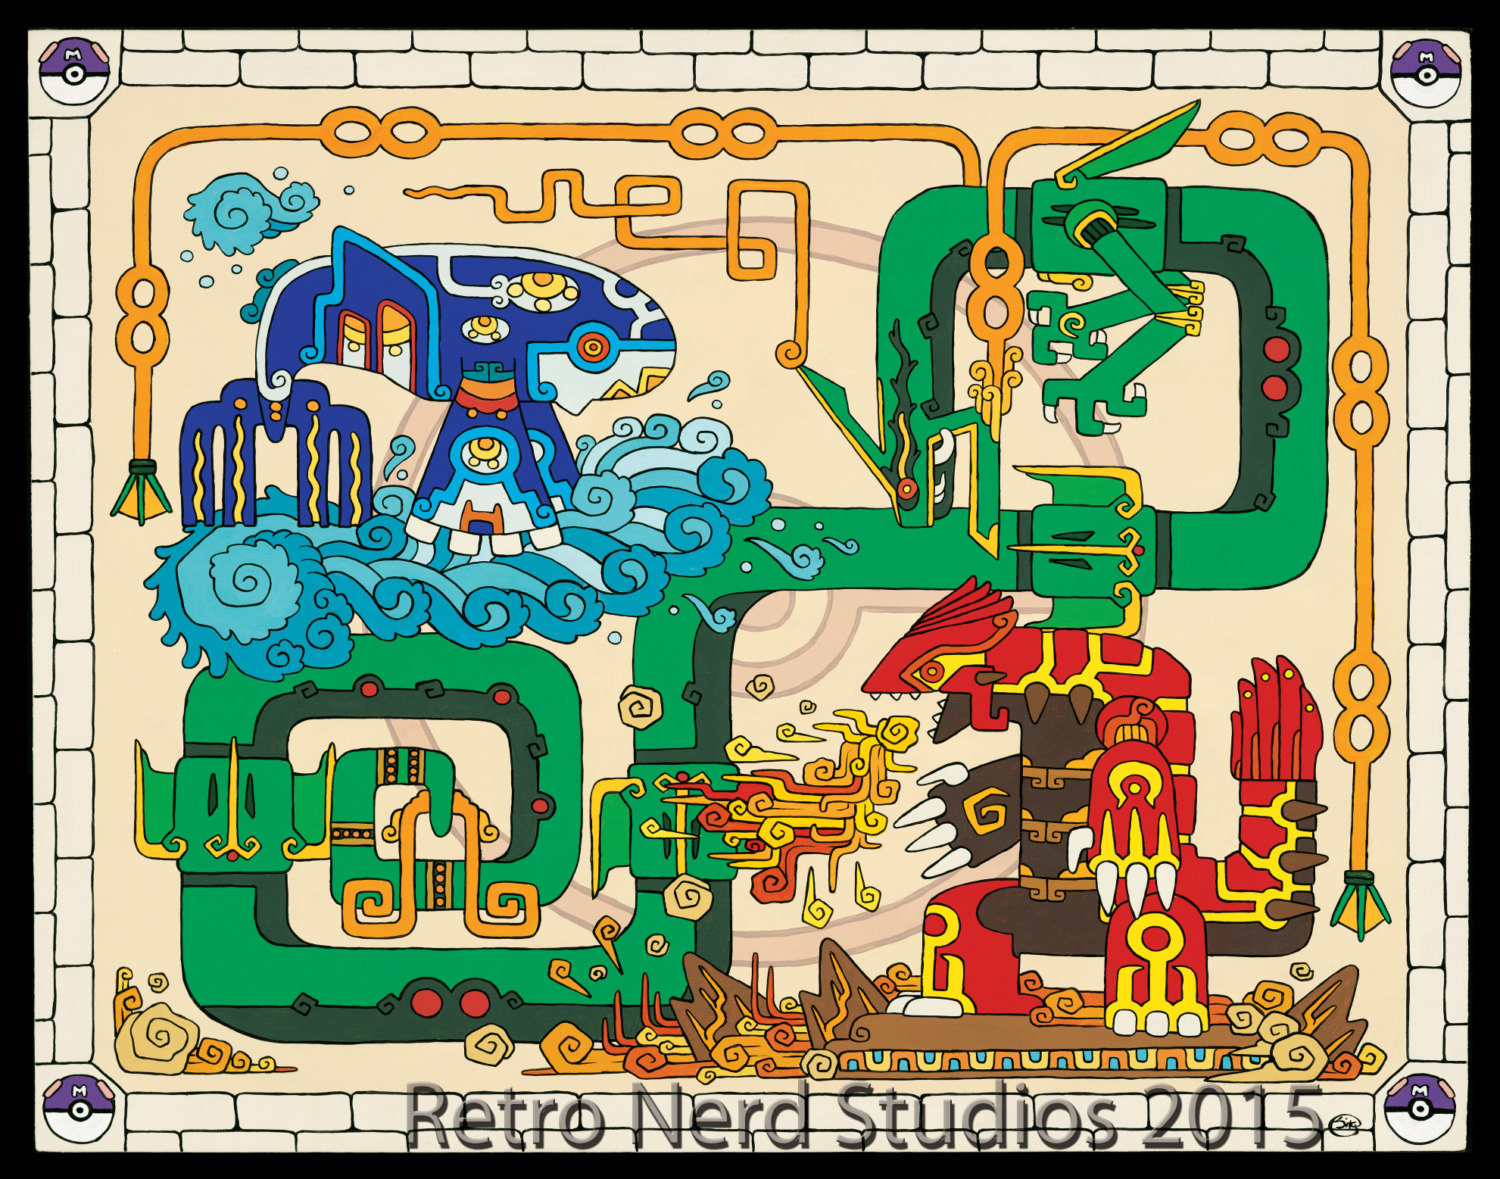 アメリカ人 妻はポケモンやマリオを マヤ文明 風の絵にするのが趣味 称賛されていた作品いろいろ らばq